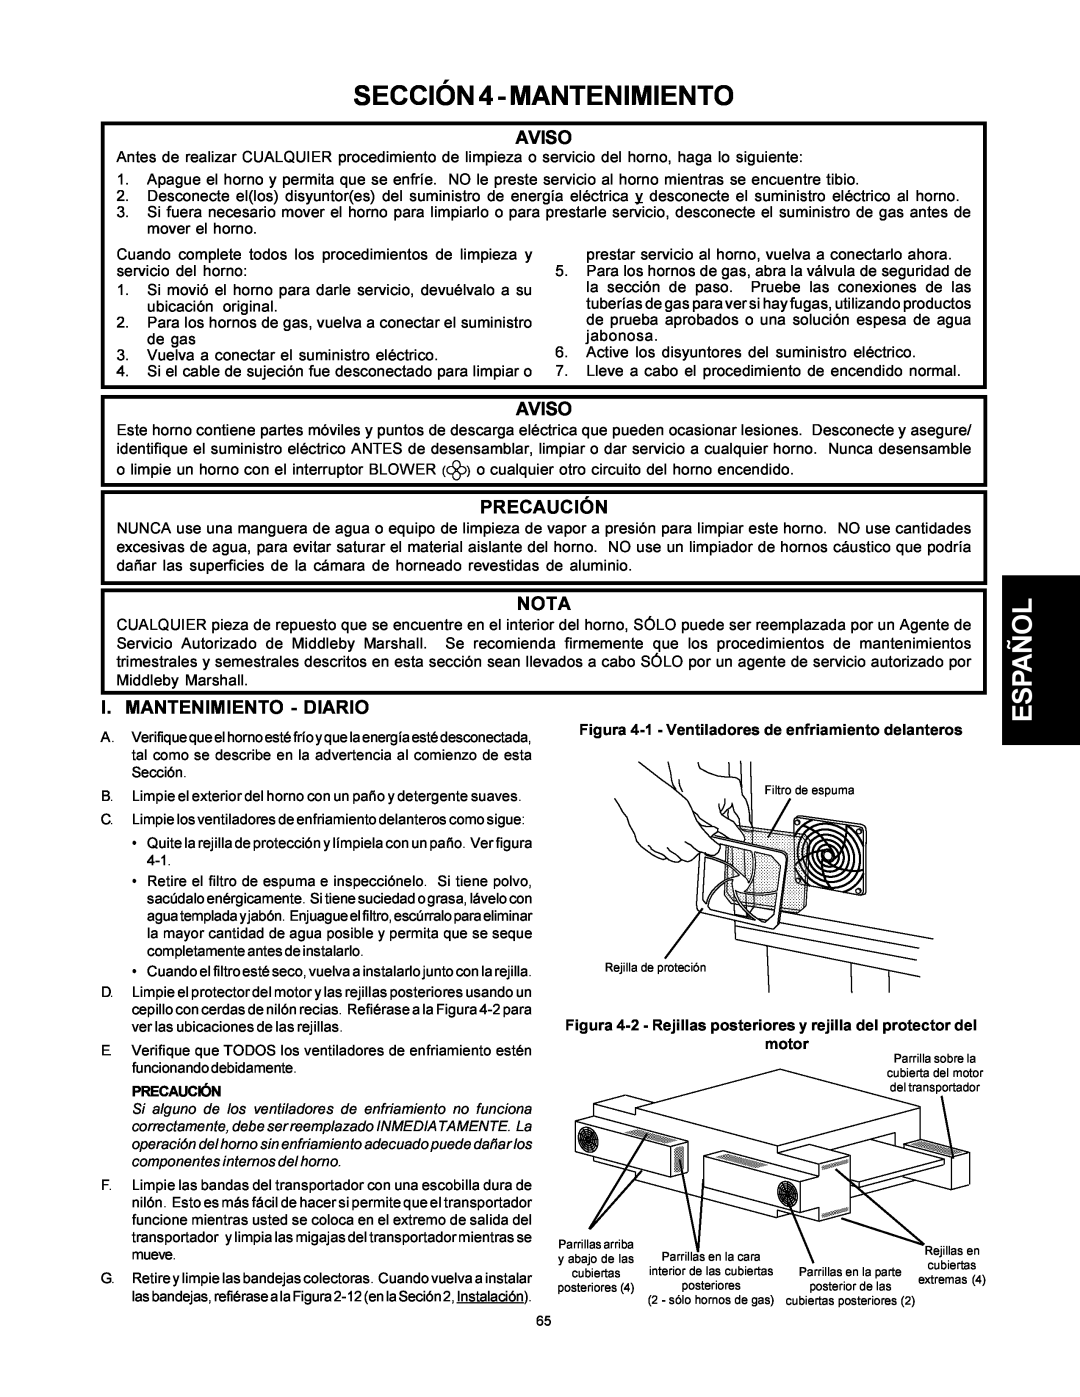 Middleby Marshall PS500 SECCIÓN4-MANTENIMIENTO, Aviso, Nota, I. Mantenimiento - Diario, Precaución, motor 